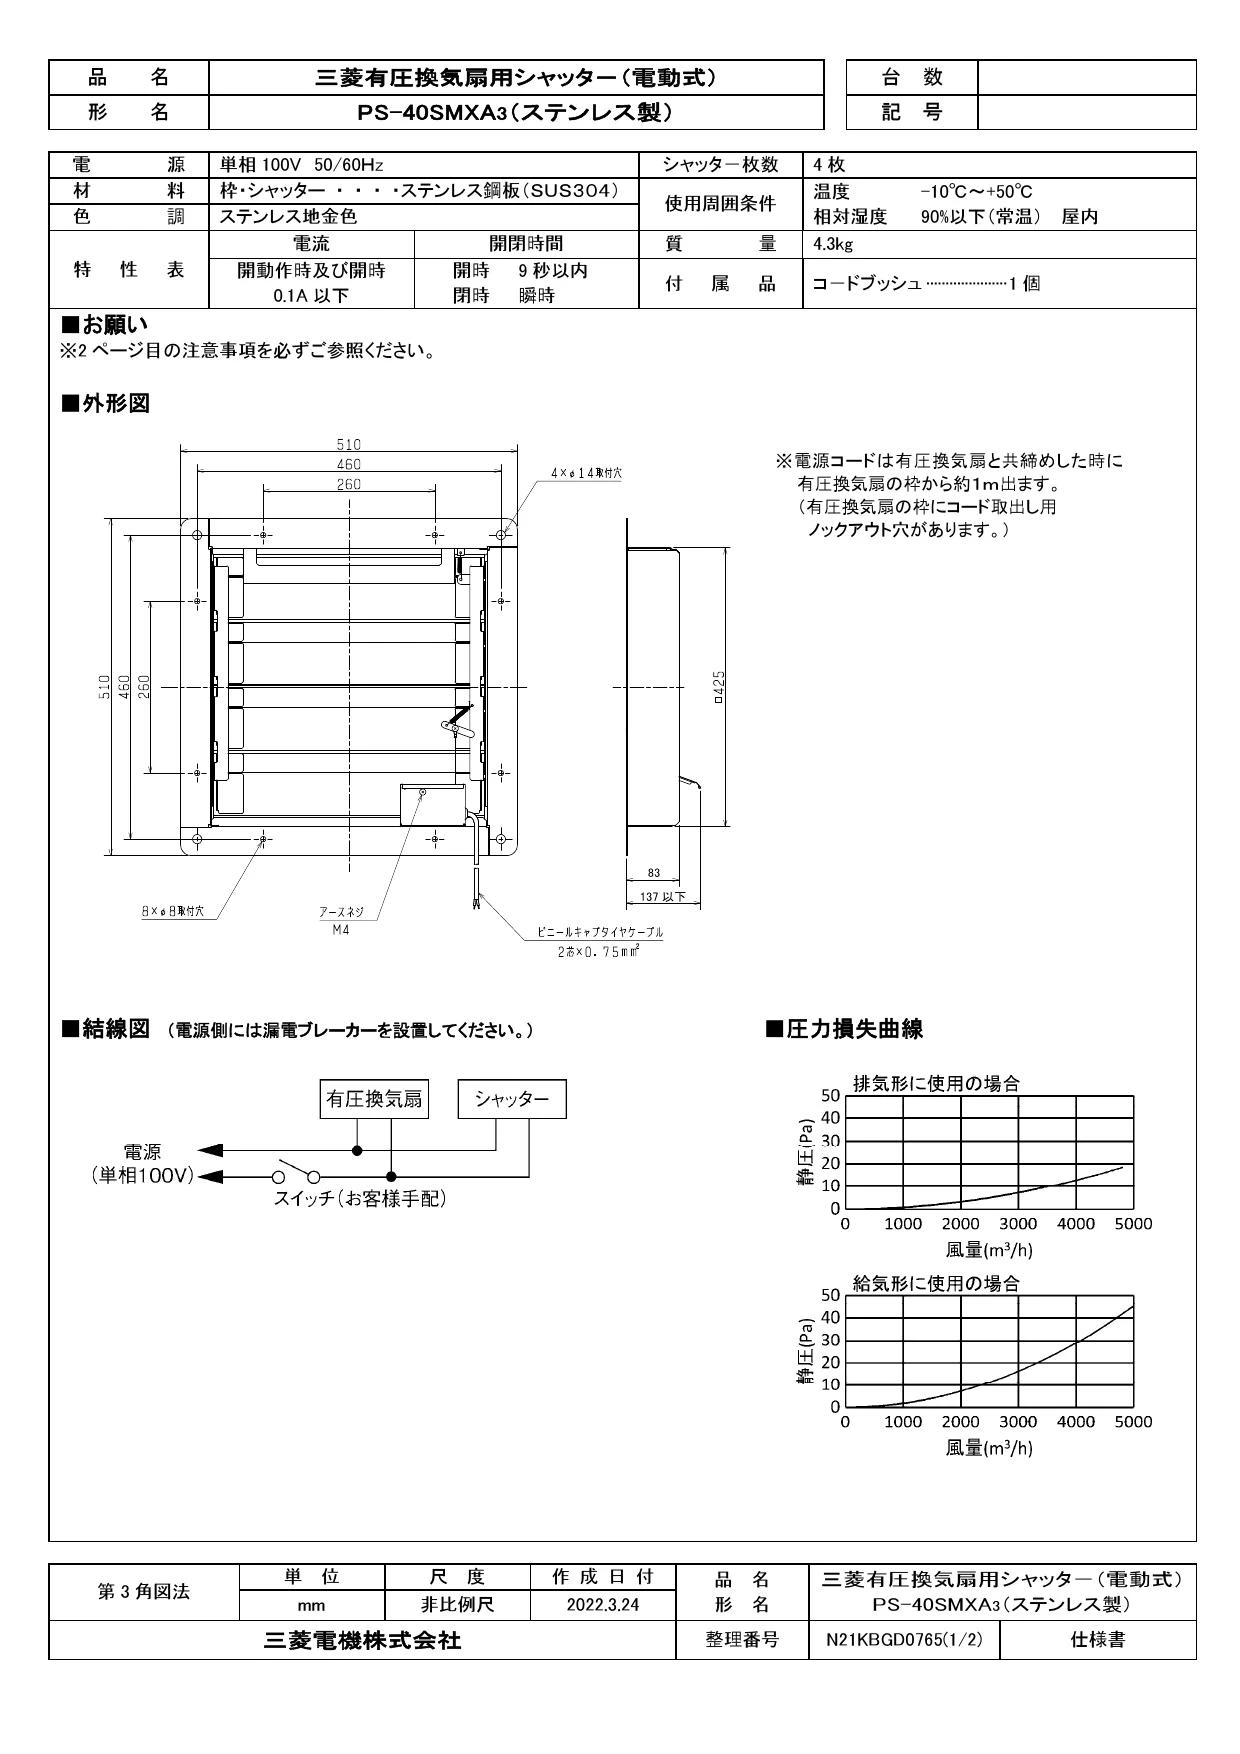 三菱電機 PS-40SMXA3取扱説明書 納入仕様図 | 通販 プロストア ダイレクト